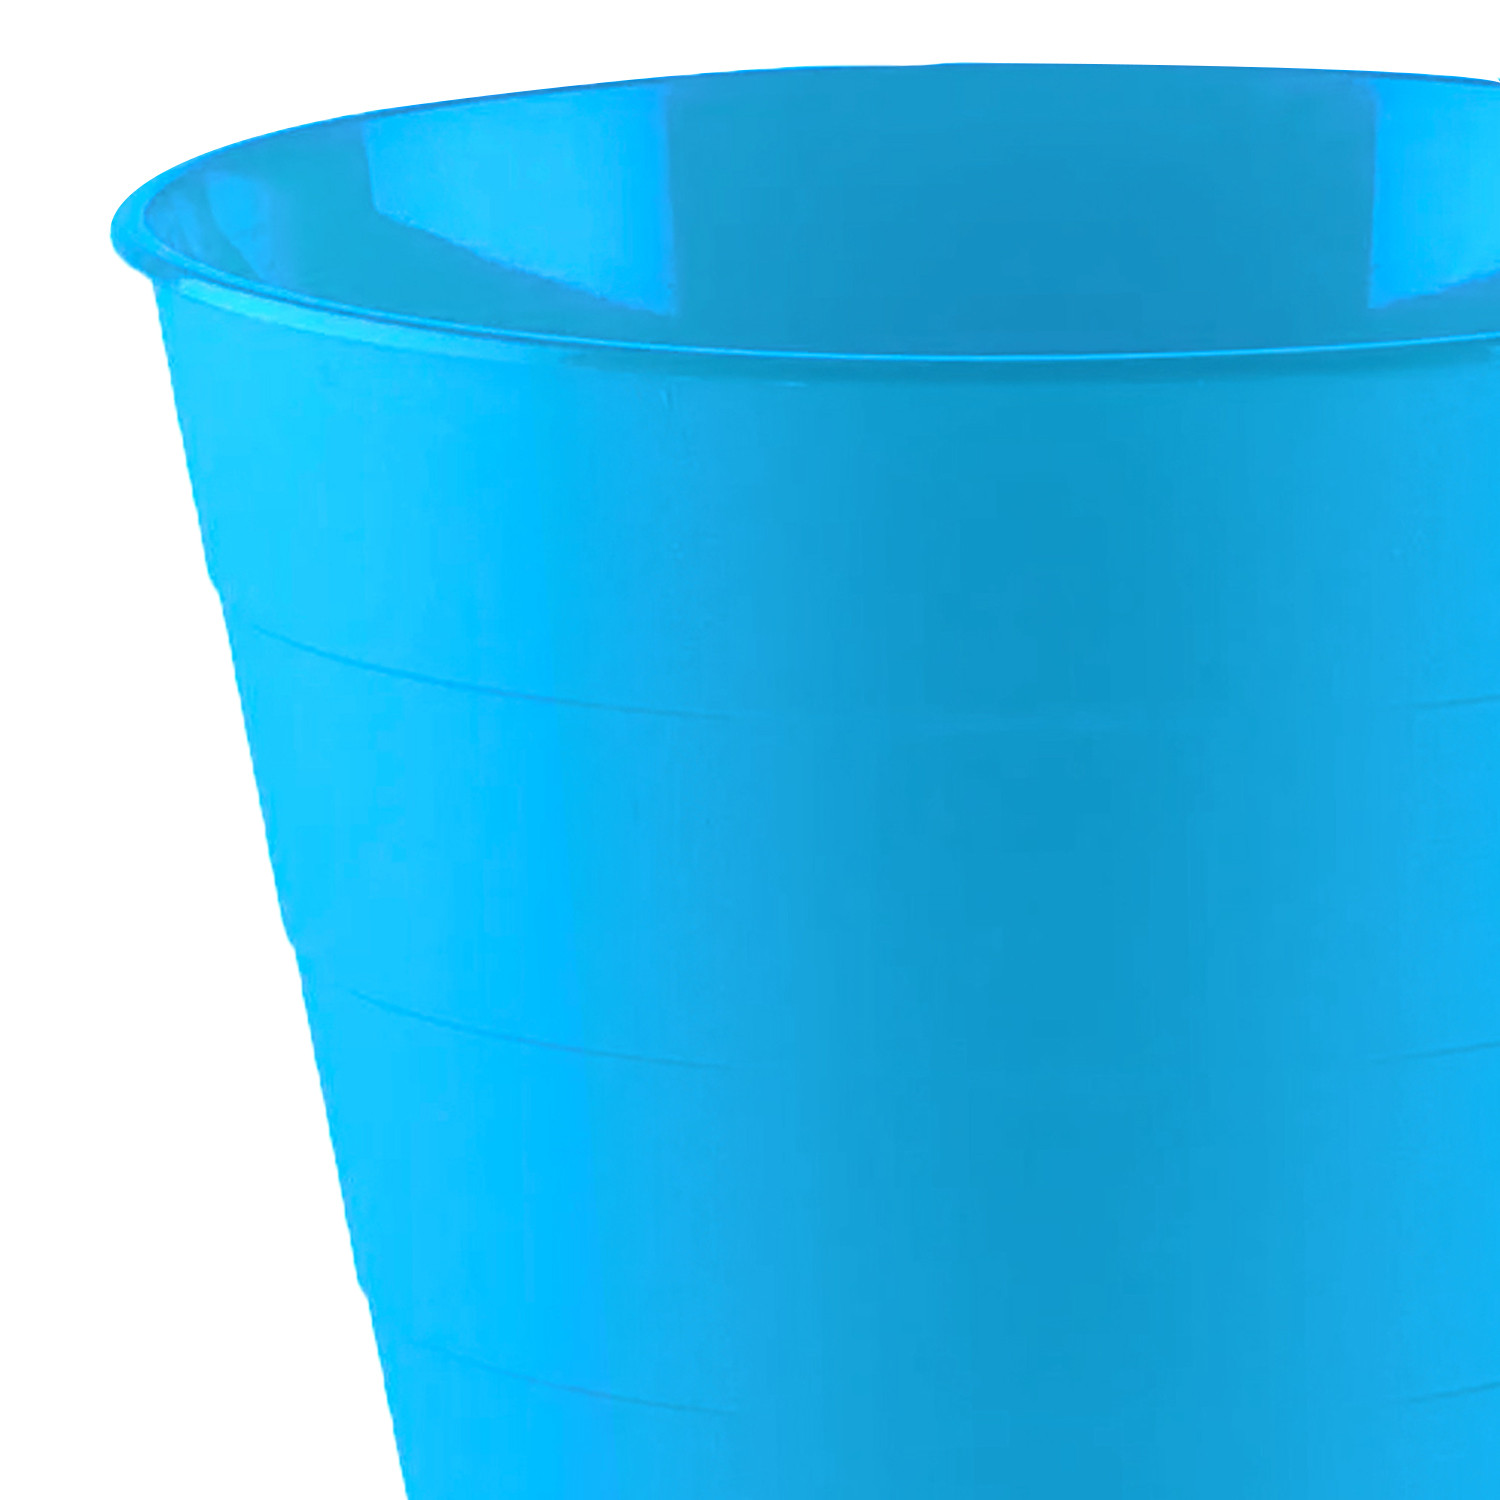 Kuber Industries Dustbin|Plastic Dustbin|Dustbin for Kitchen|Dustbin For Bedroom,Hall|Dustbin For office|8 Litre Dustbin (Sky Blue)